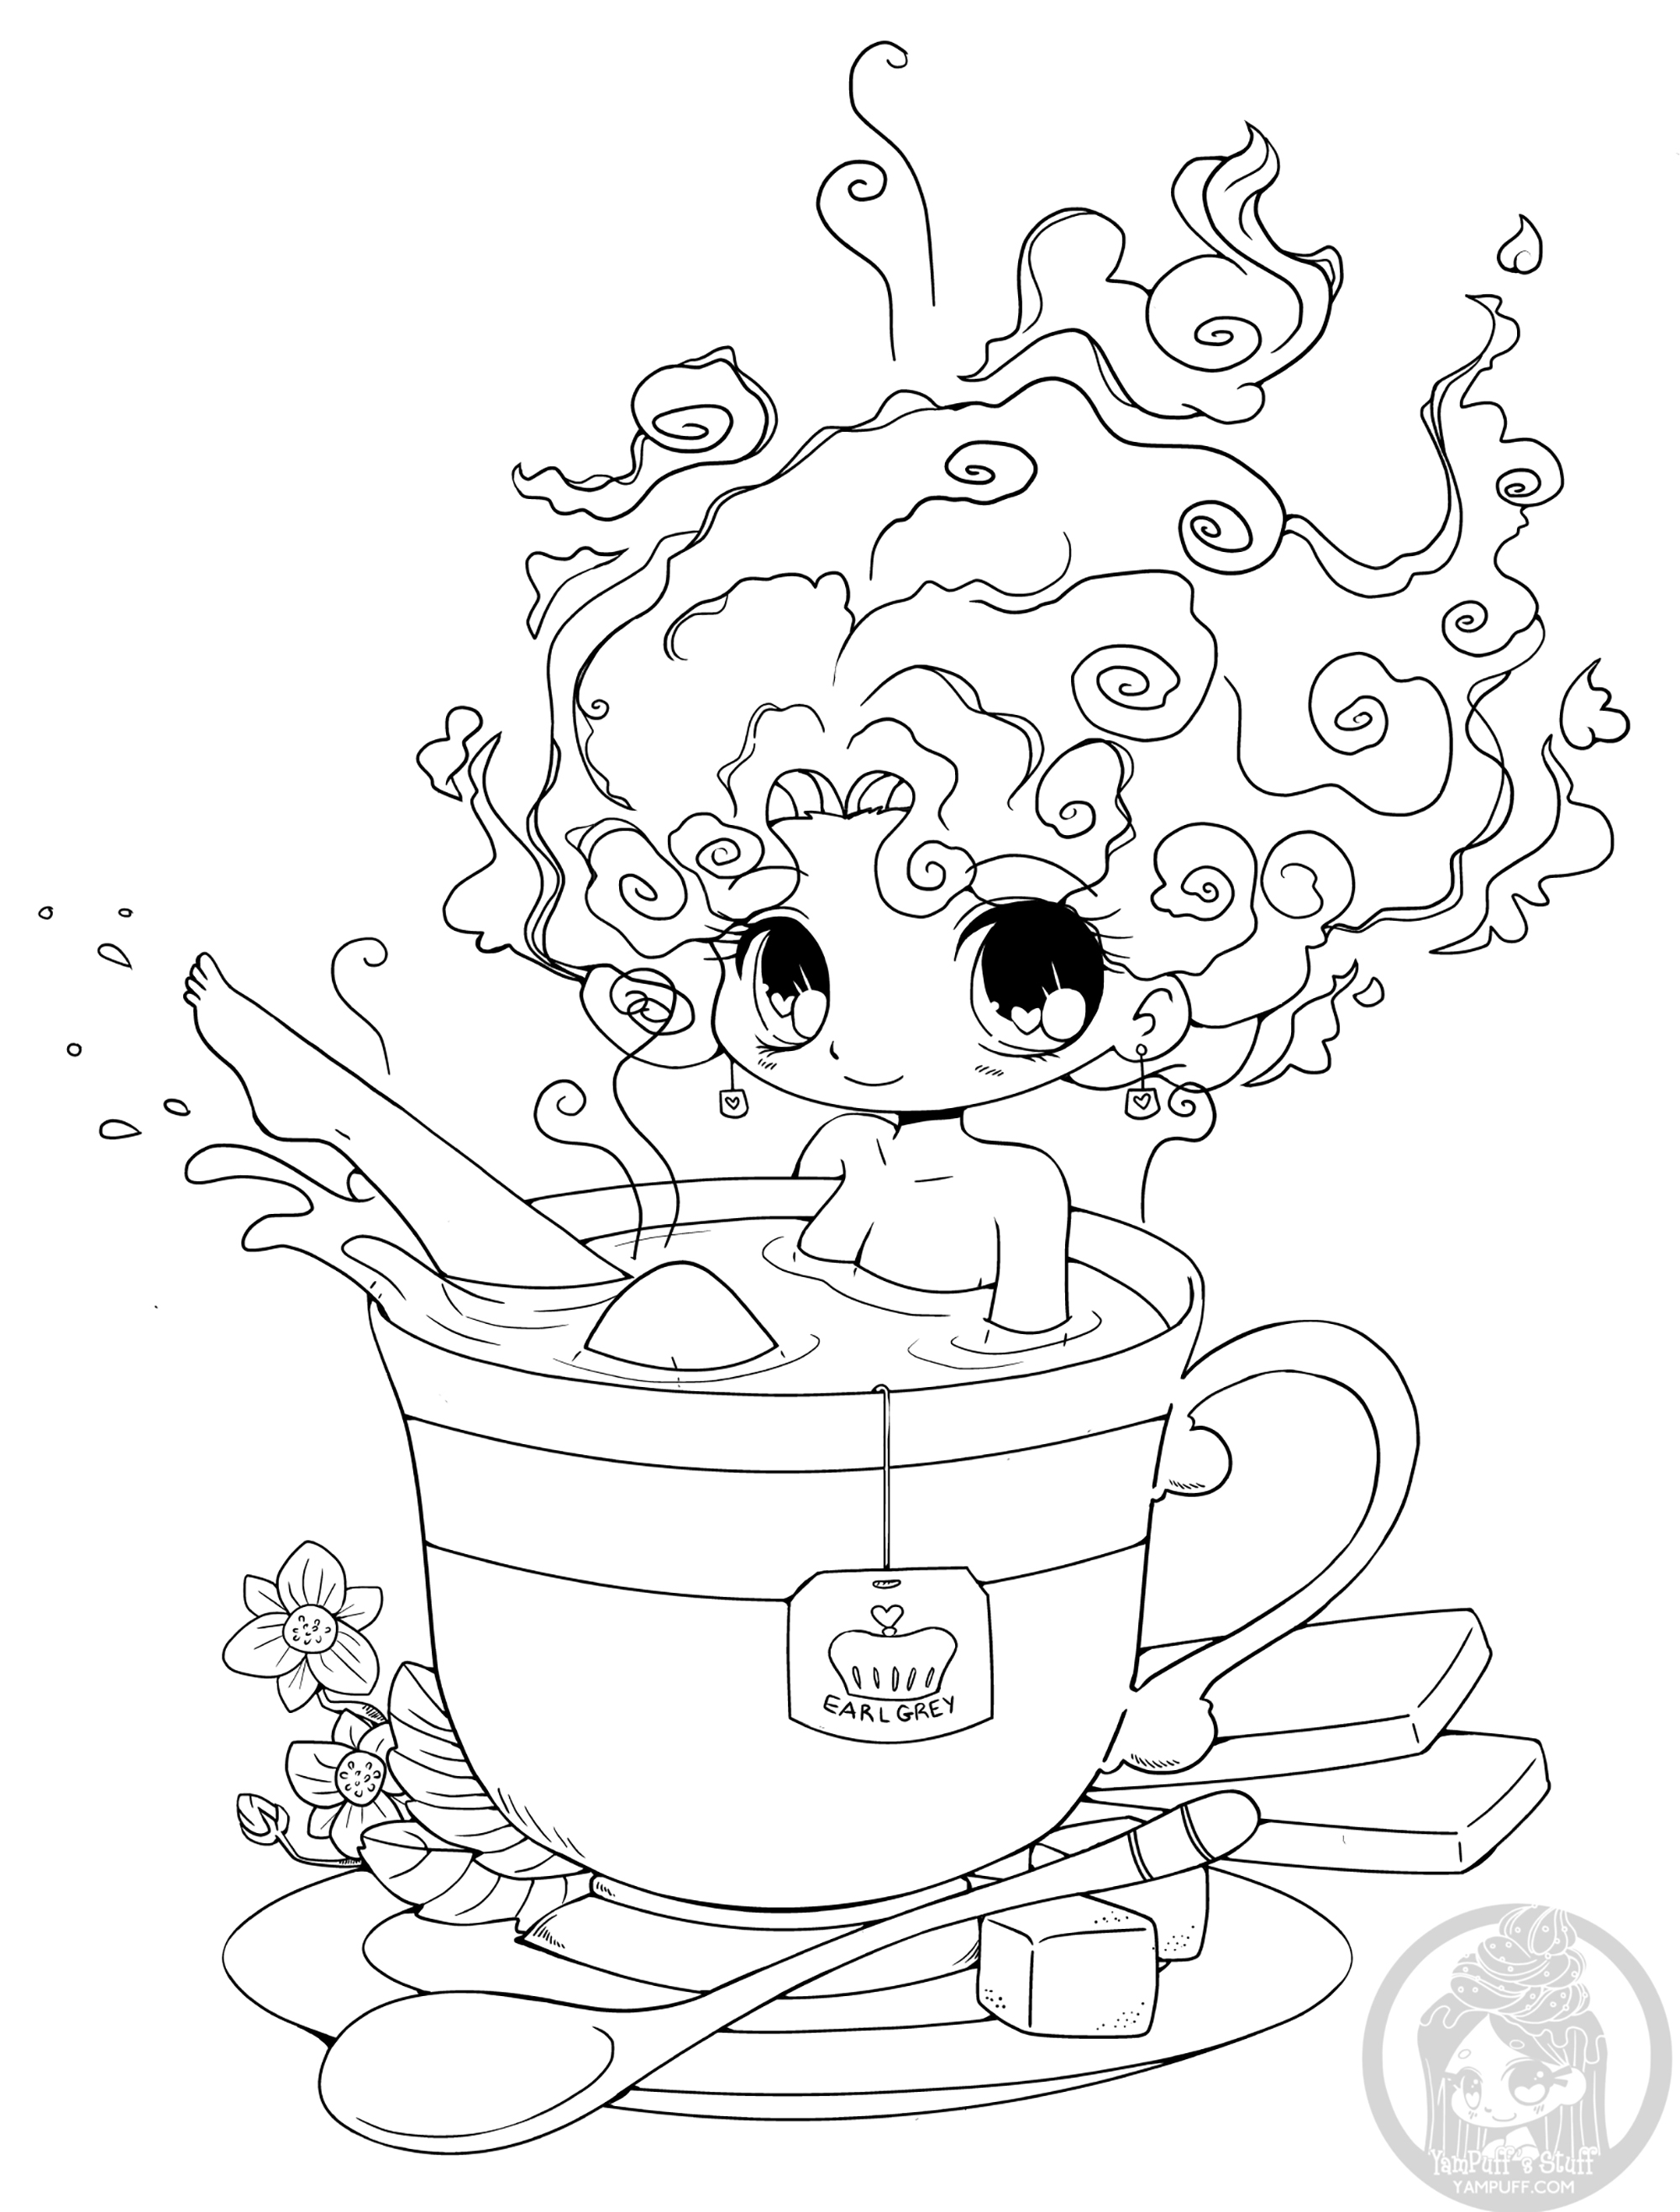 Eine Tasse Tee ist das neue Bad! Komm und probiere!, Künstler : Yampuff